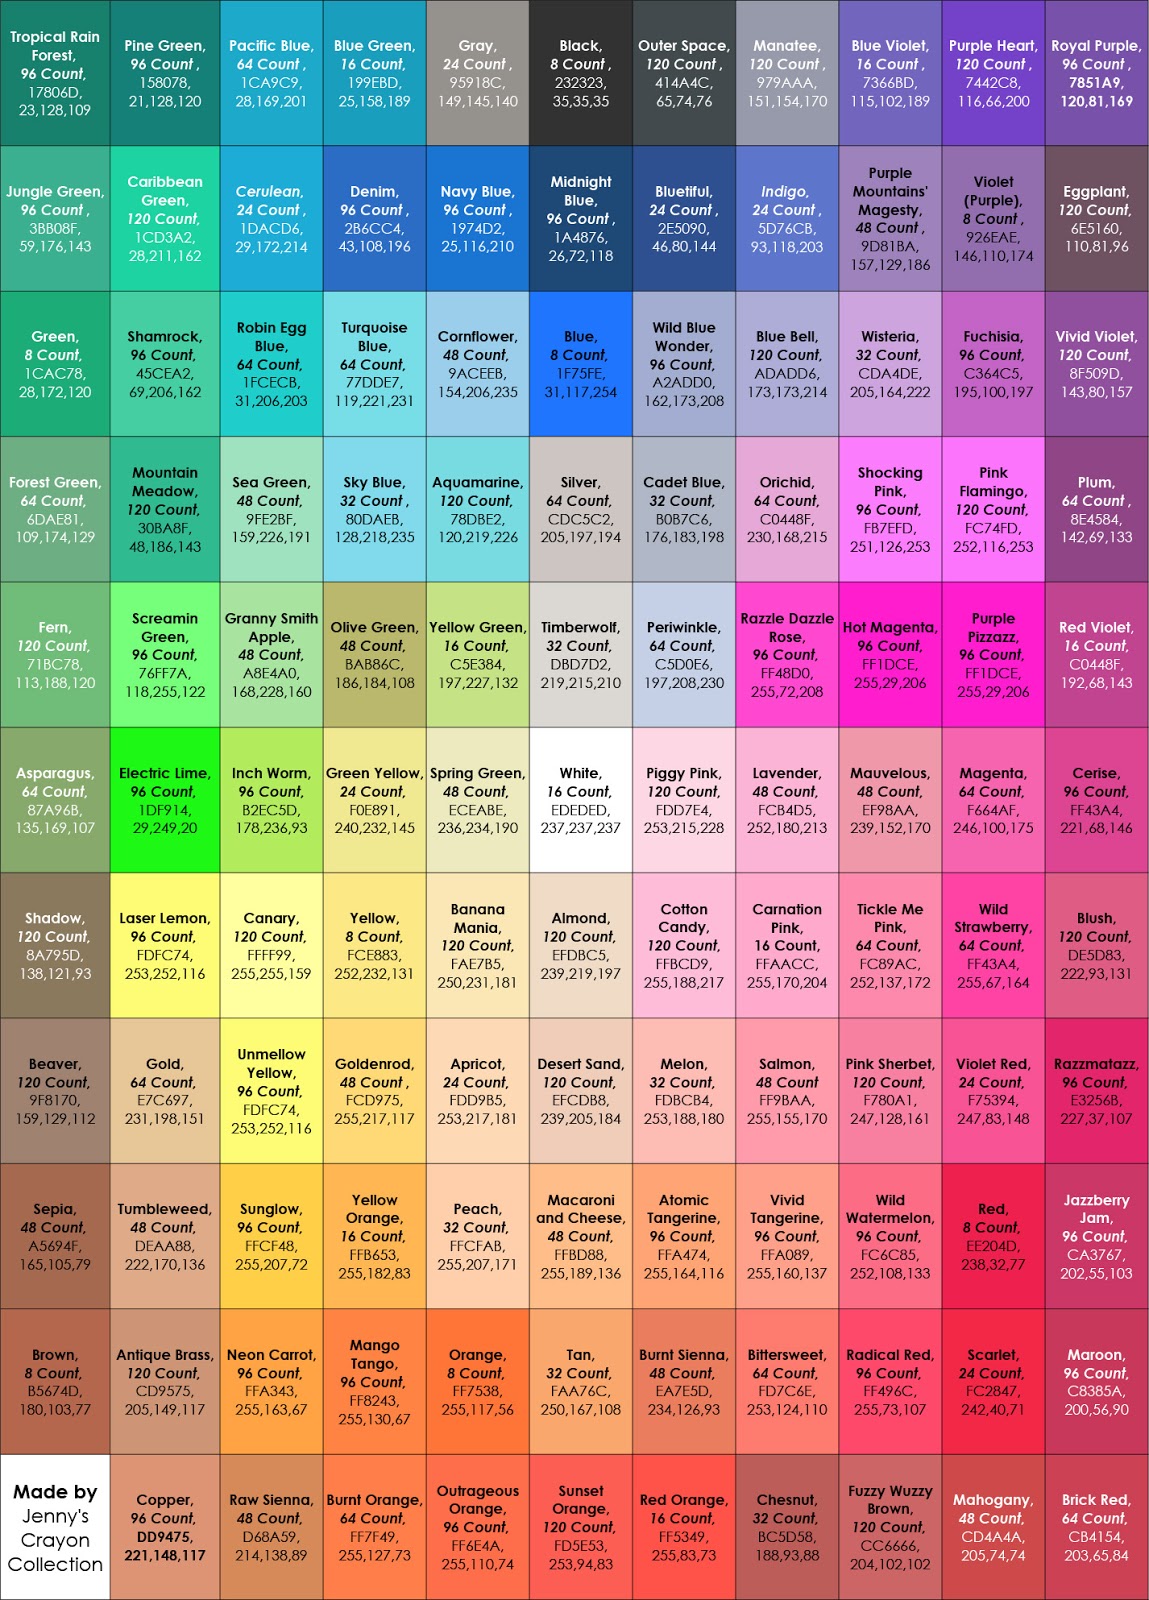 Cra Z Art Color Chart